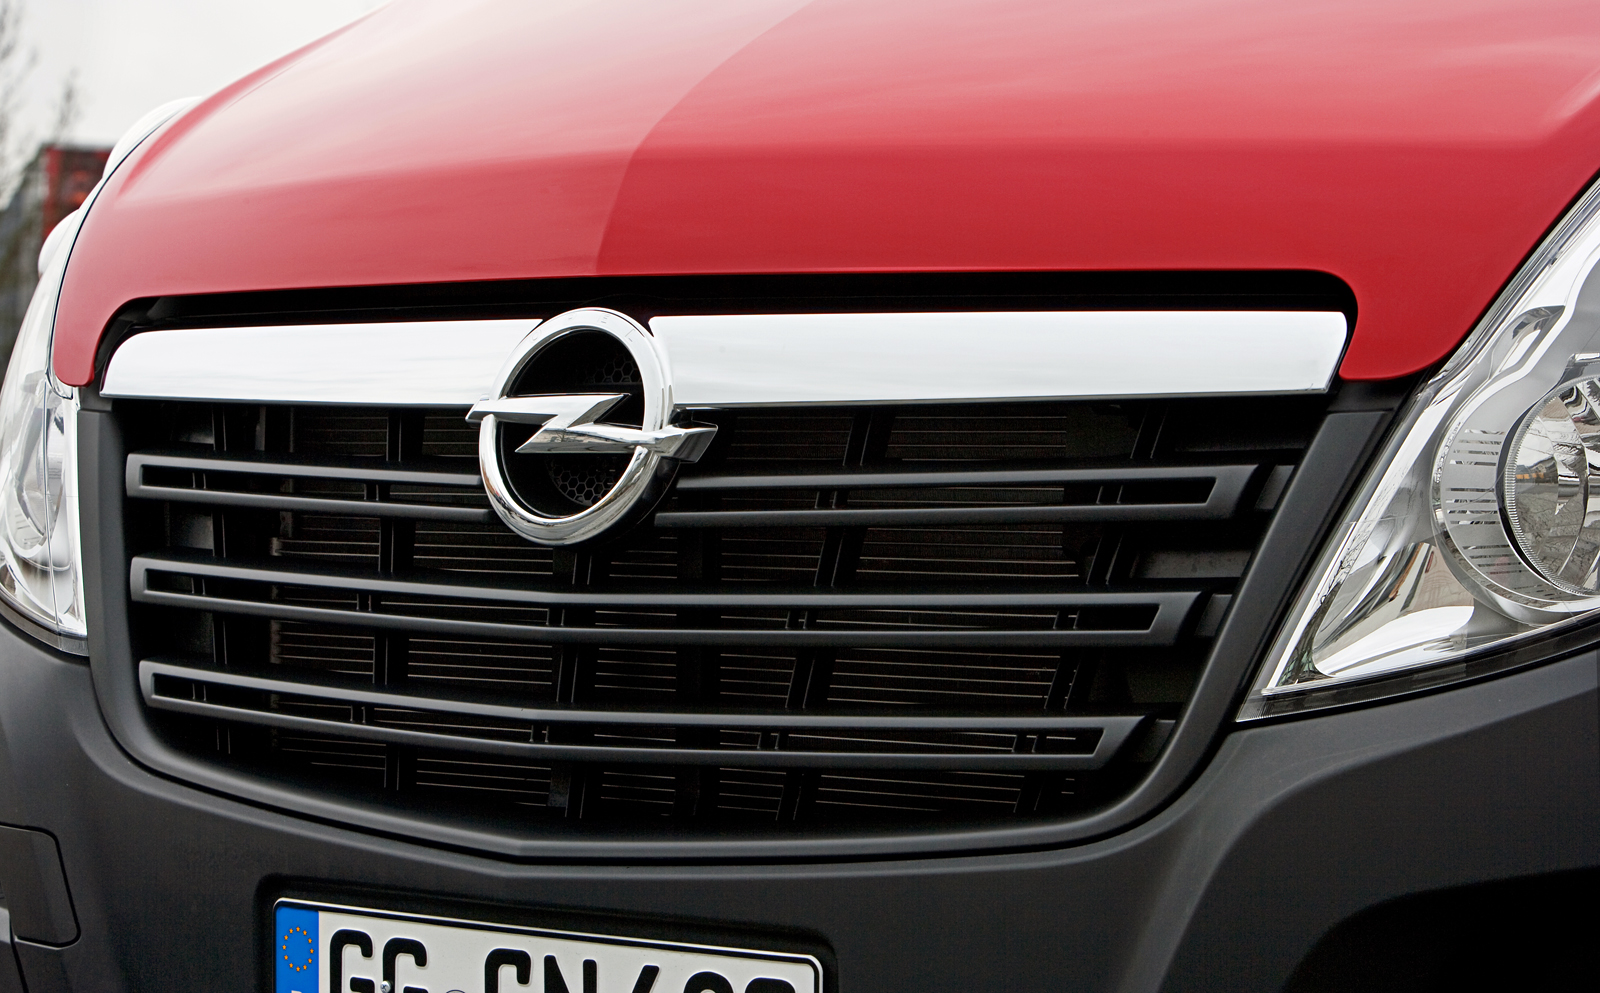 Cea mai mare sigla Opel